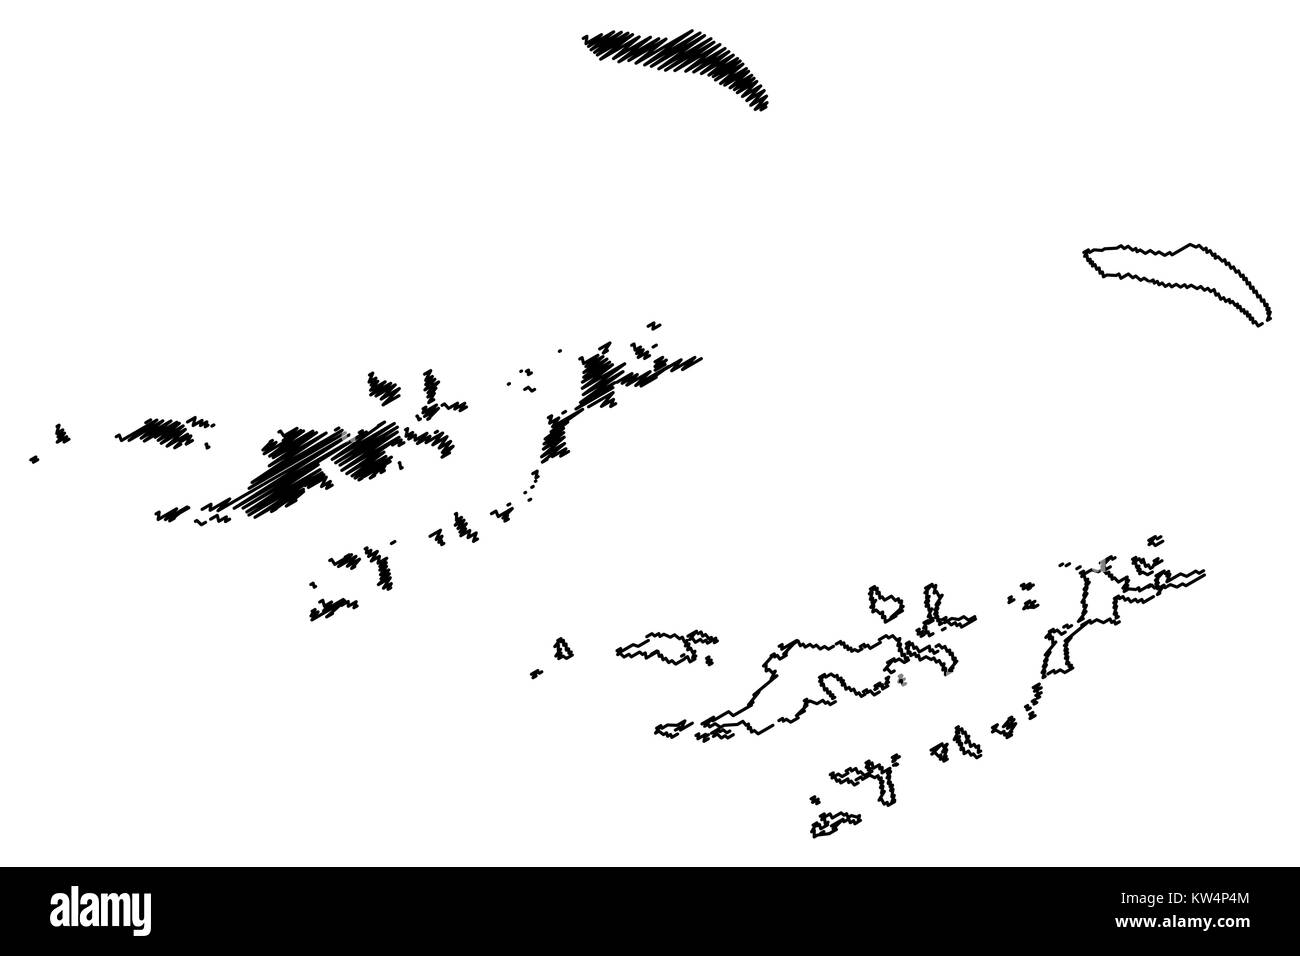 Îles Vierges britanniques map vector illustration, croquis gribouillis d'Îles Vierges Britanniques Illustration de Vecteur